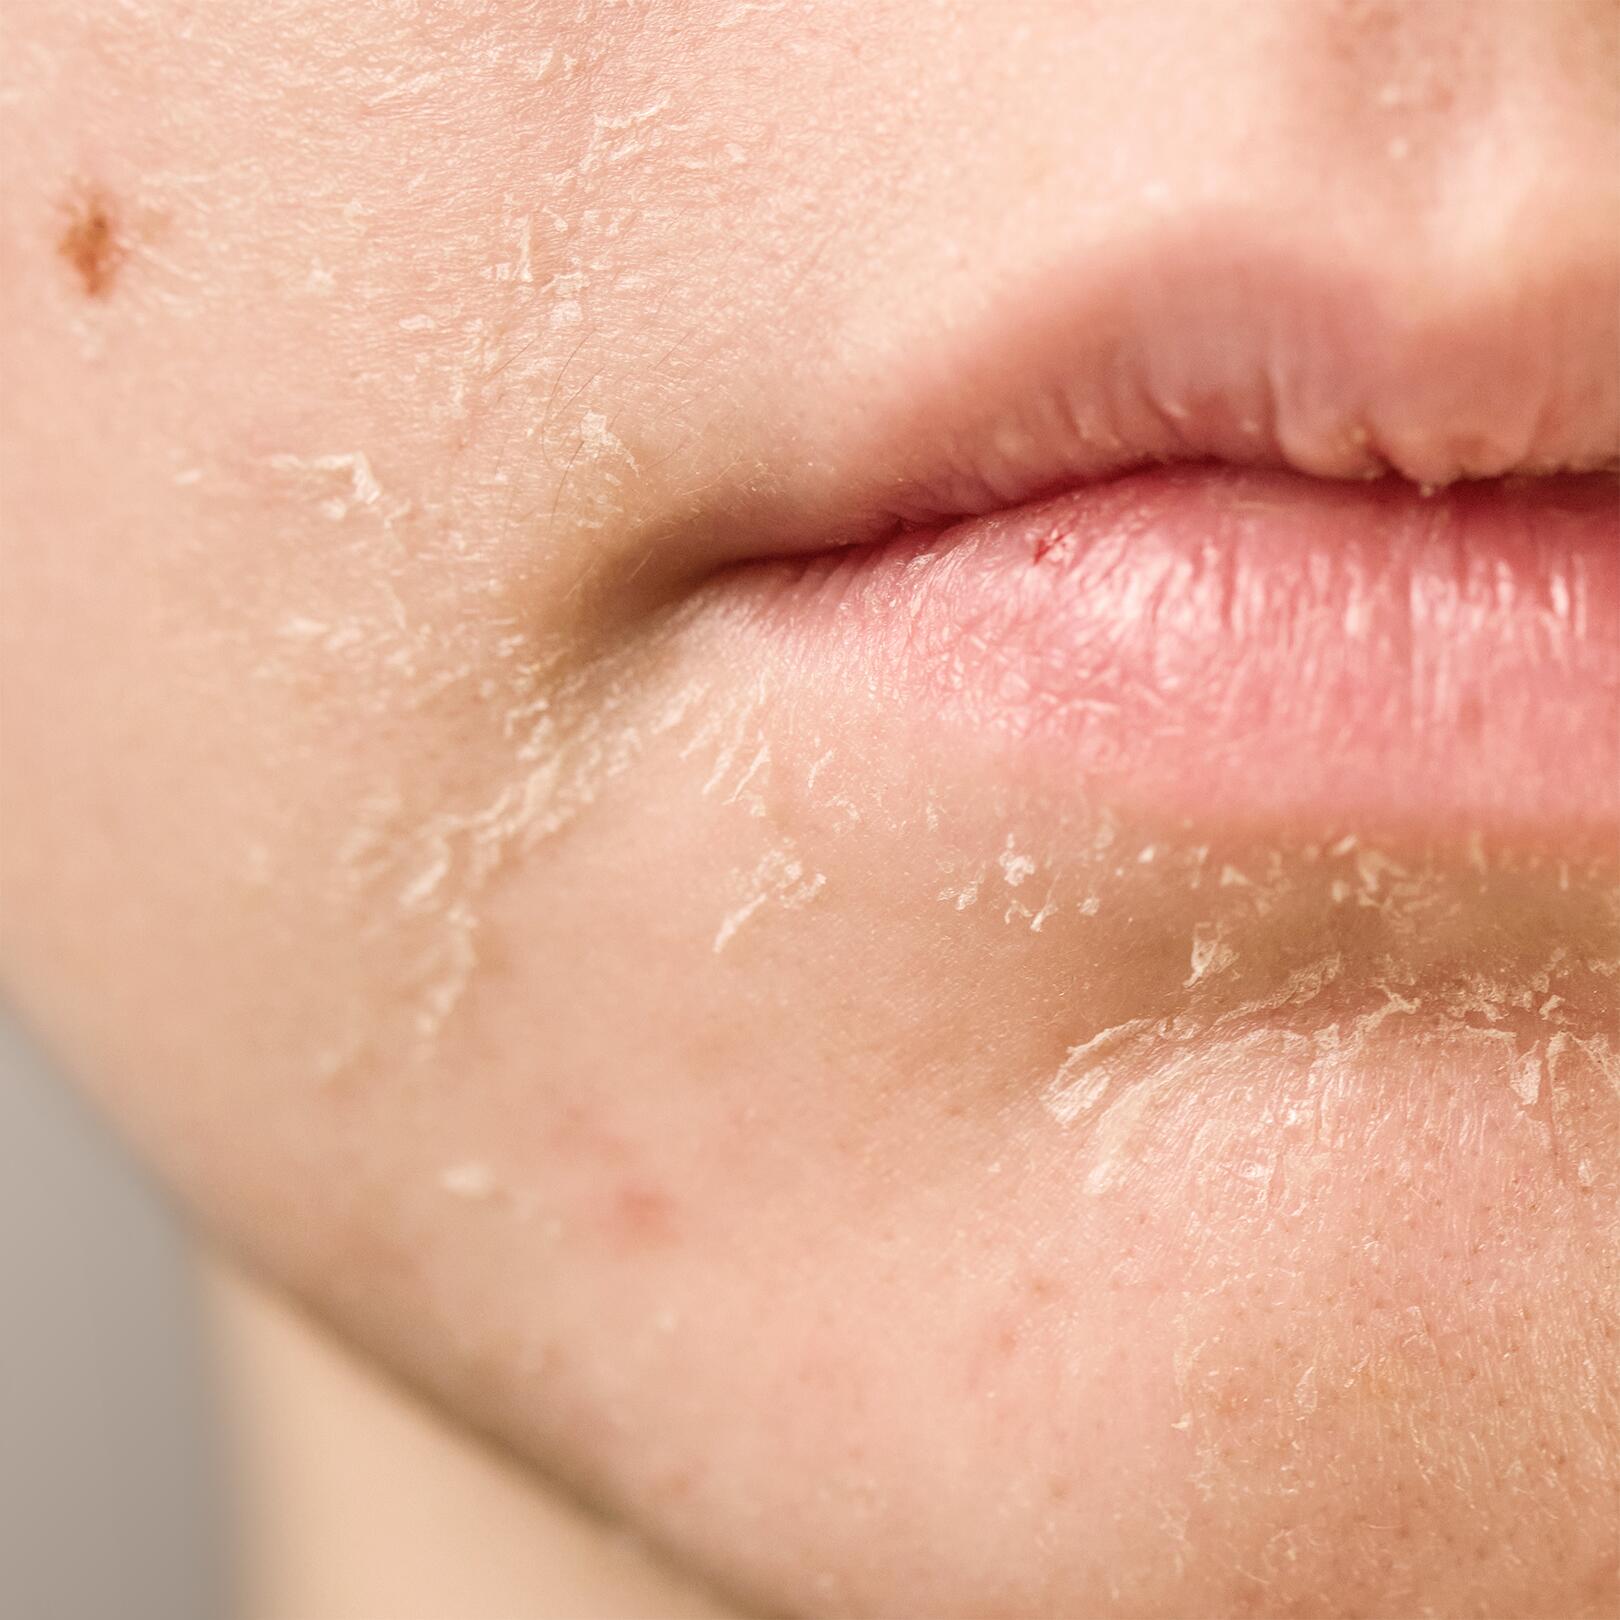 Sucha skóra: działanie uboczne niektórych leków